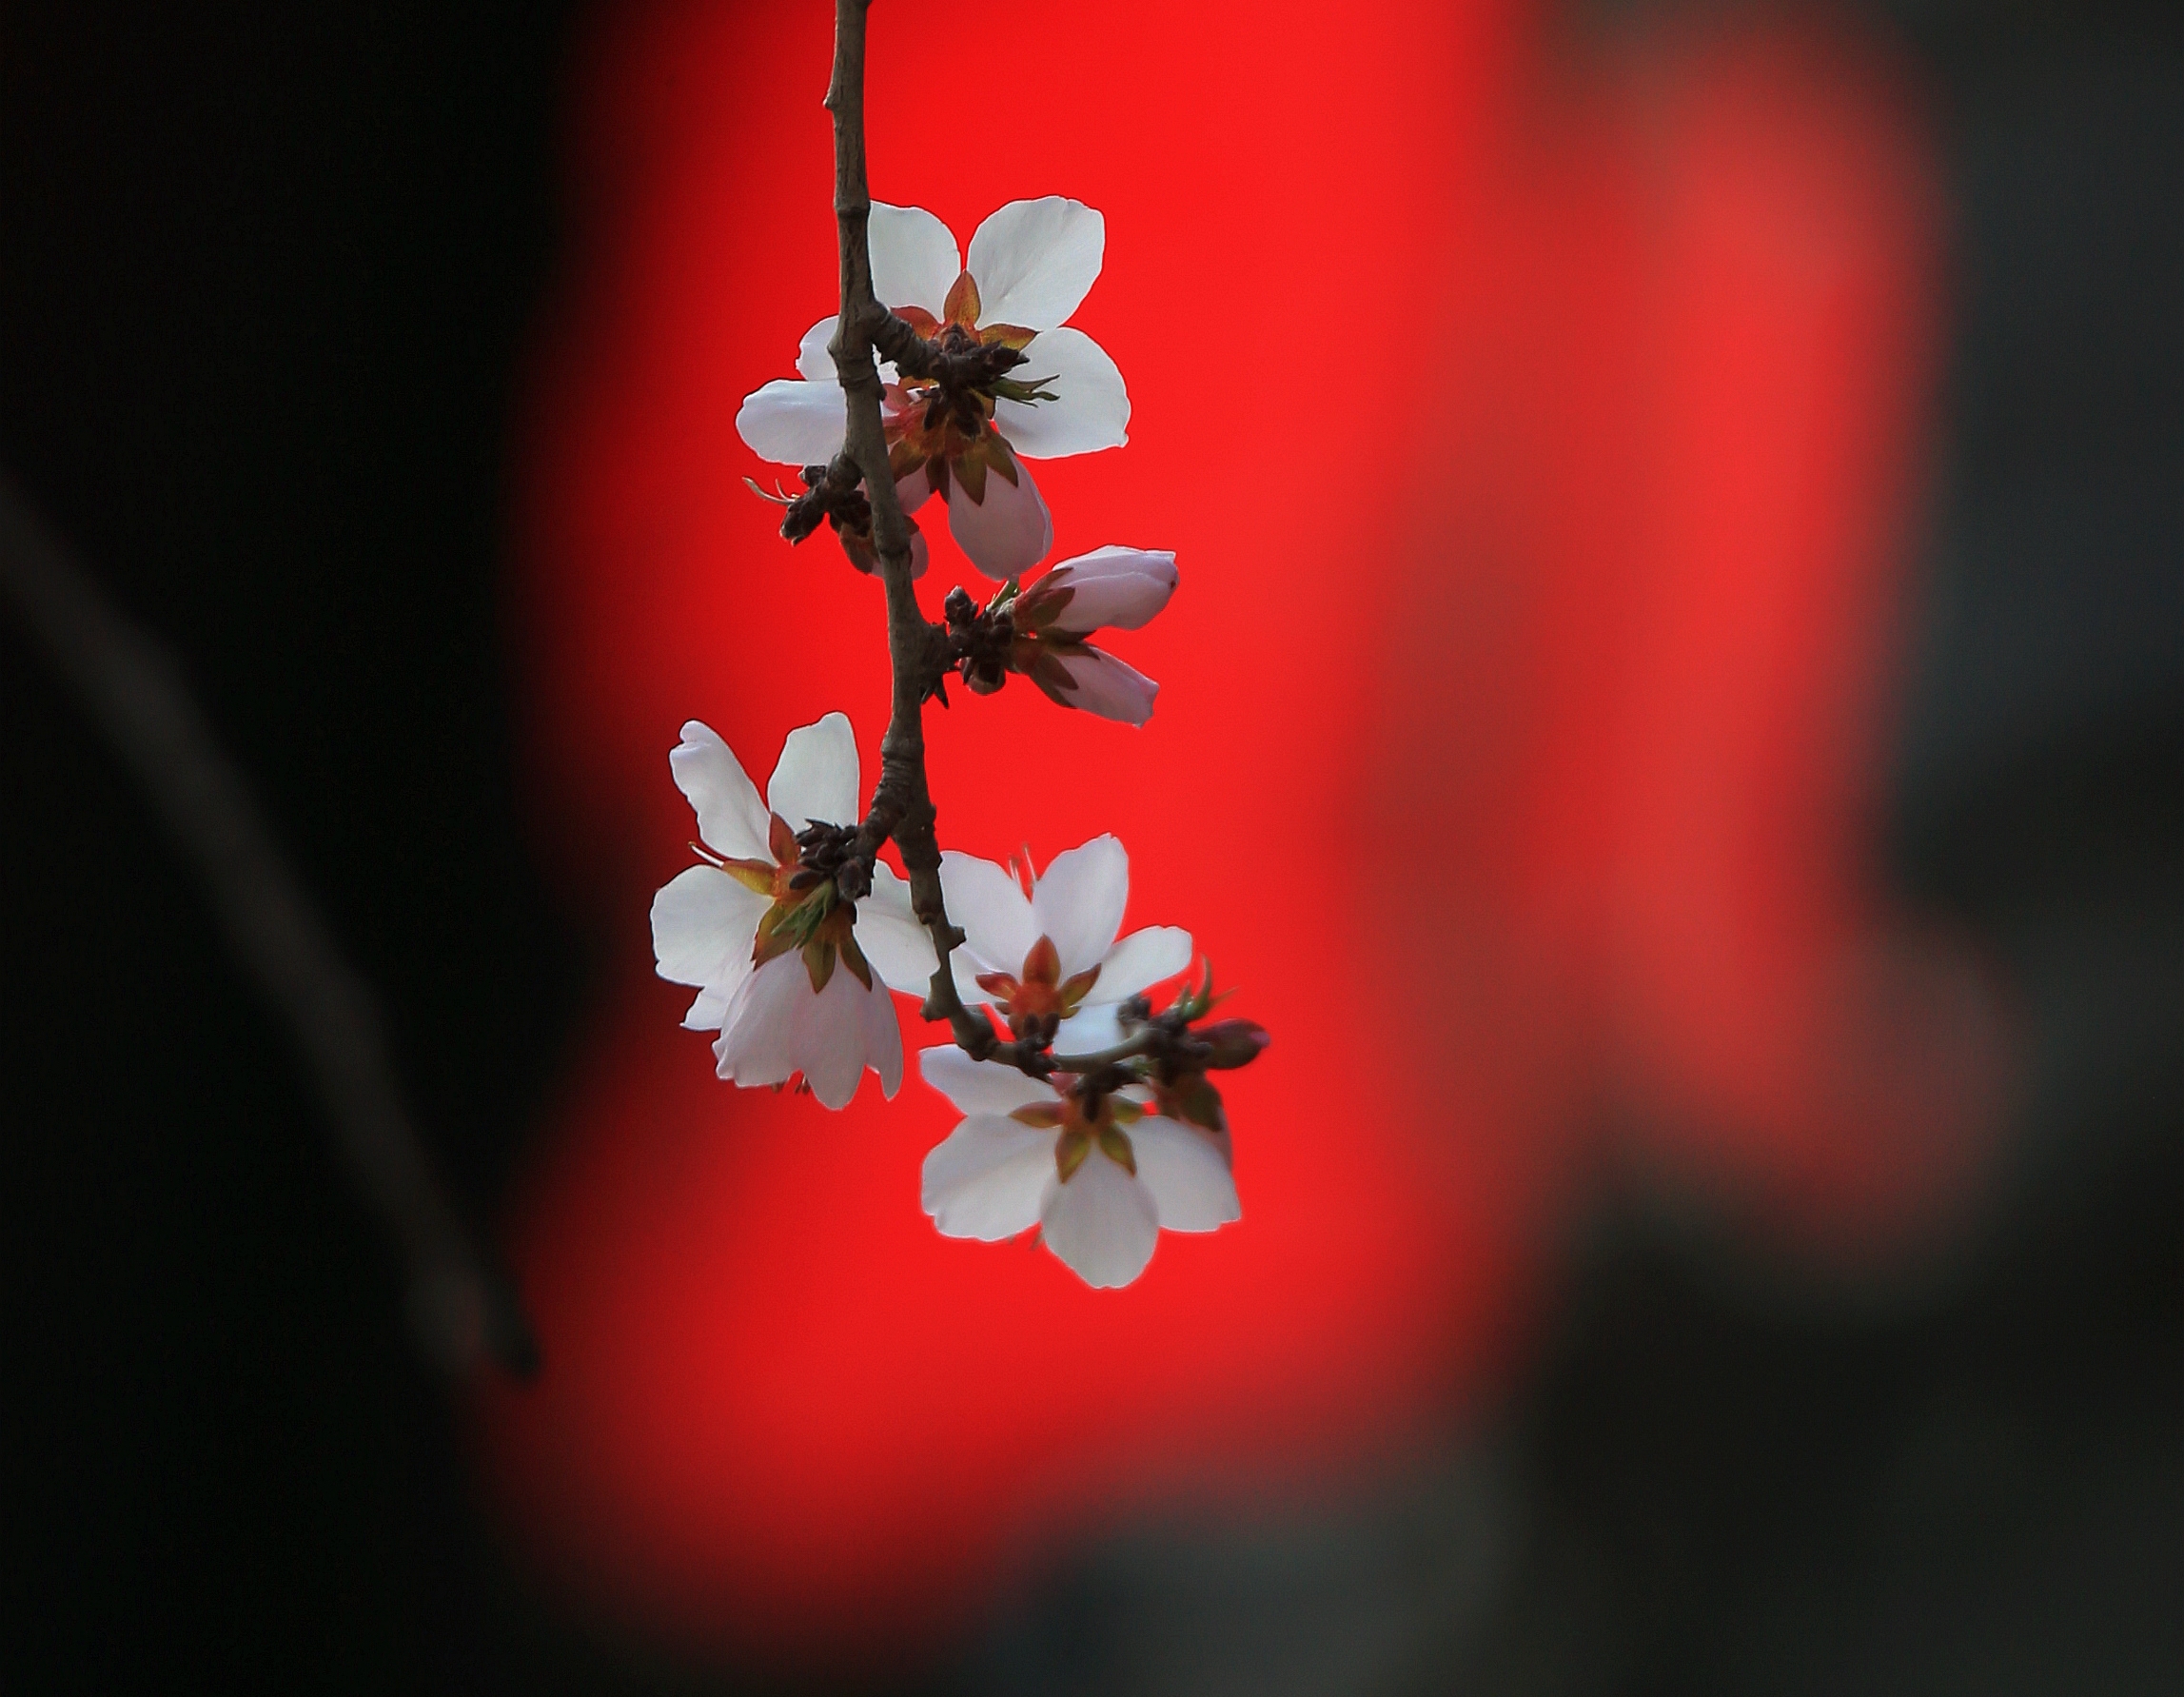 17日，哈尔滨市索菲亚建筑艺术广场前的桃花迎着春光绽放。这些率先开放的花朵，都是白色的，一朵朵在春风中露出“笑脸”，阵阵幽香在广场上飘荡，沁人心脾。每年春天，索菲亚教堂前的这几棵桃树率先绽放，率先报告冰城桃李芳菲季节的到来。